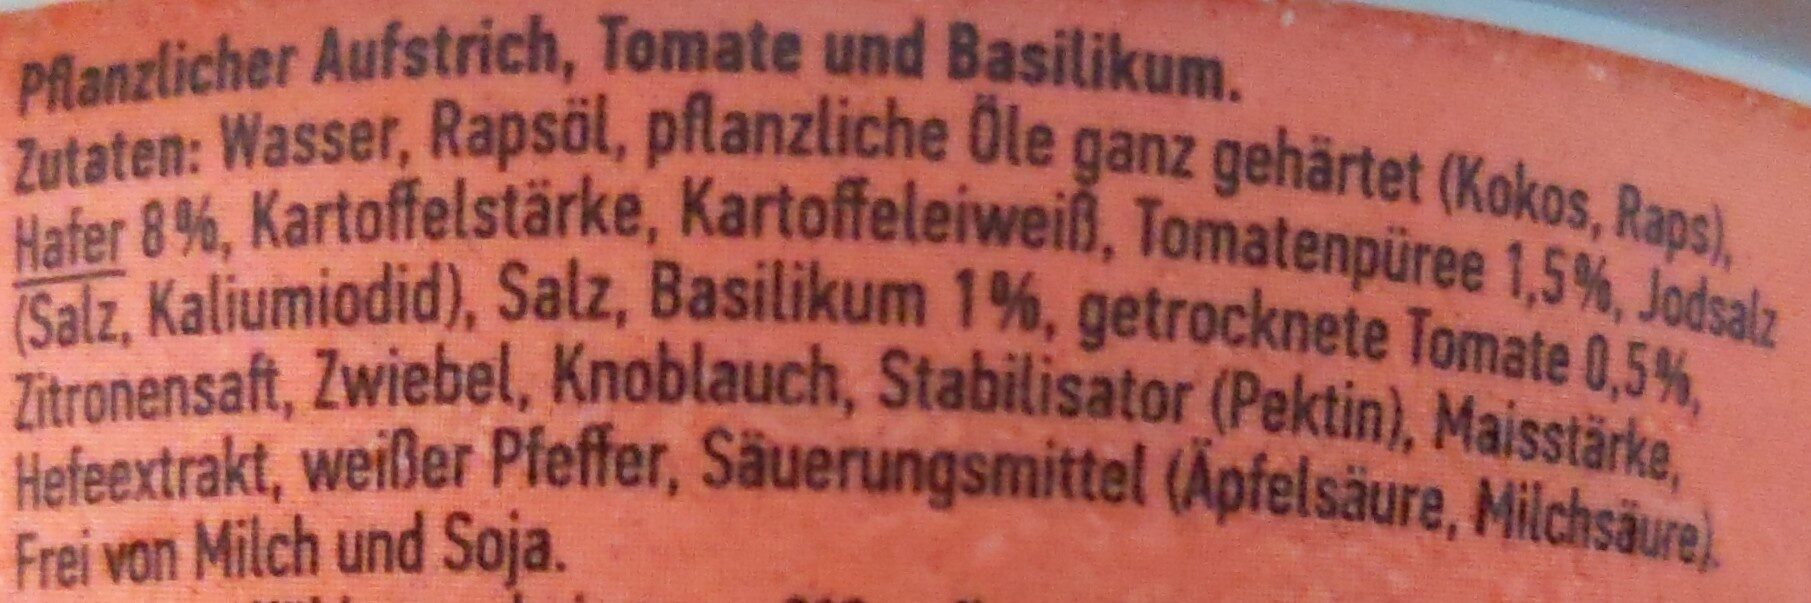 Aufstrich Tomate & Basilikum - Zutaten